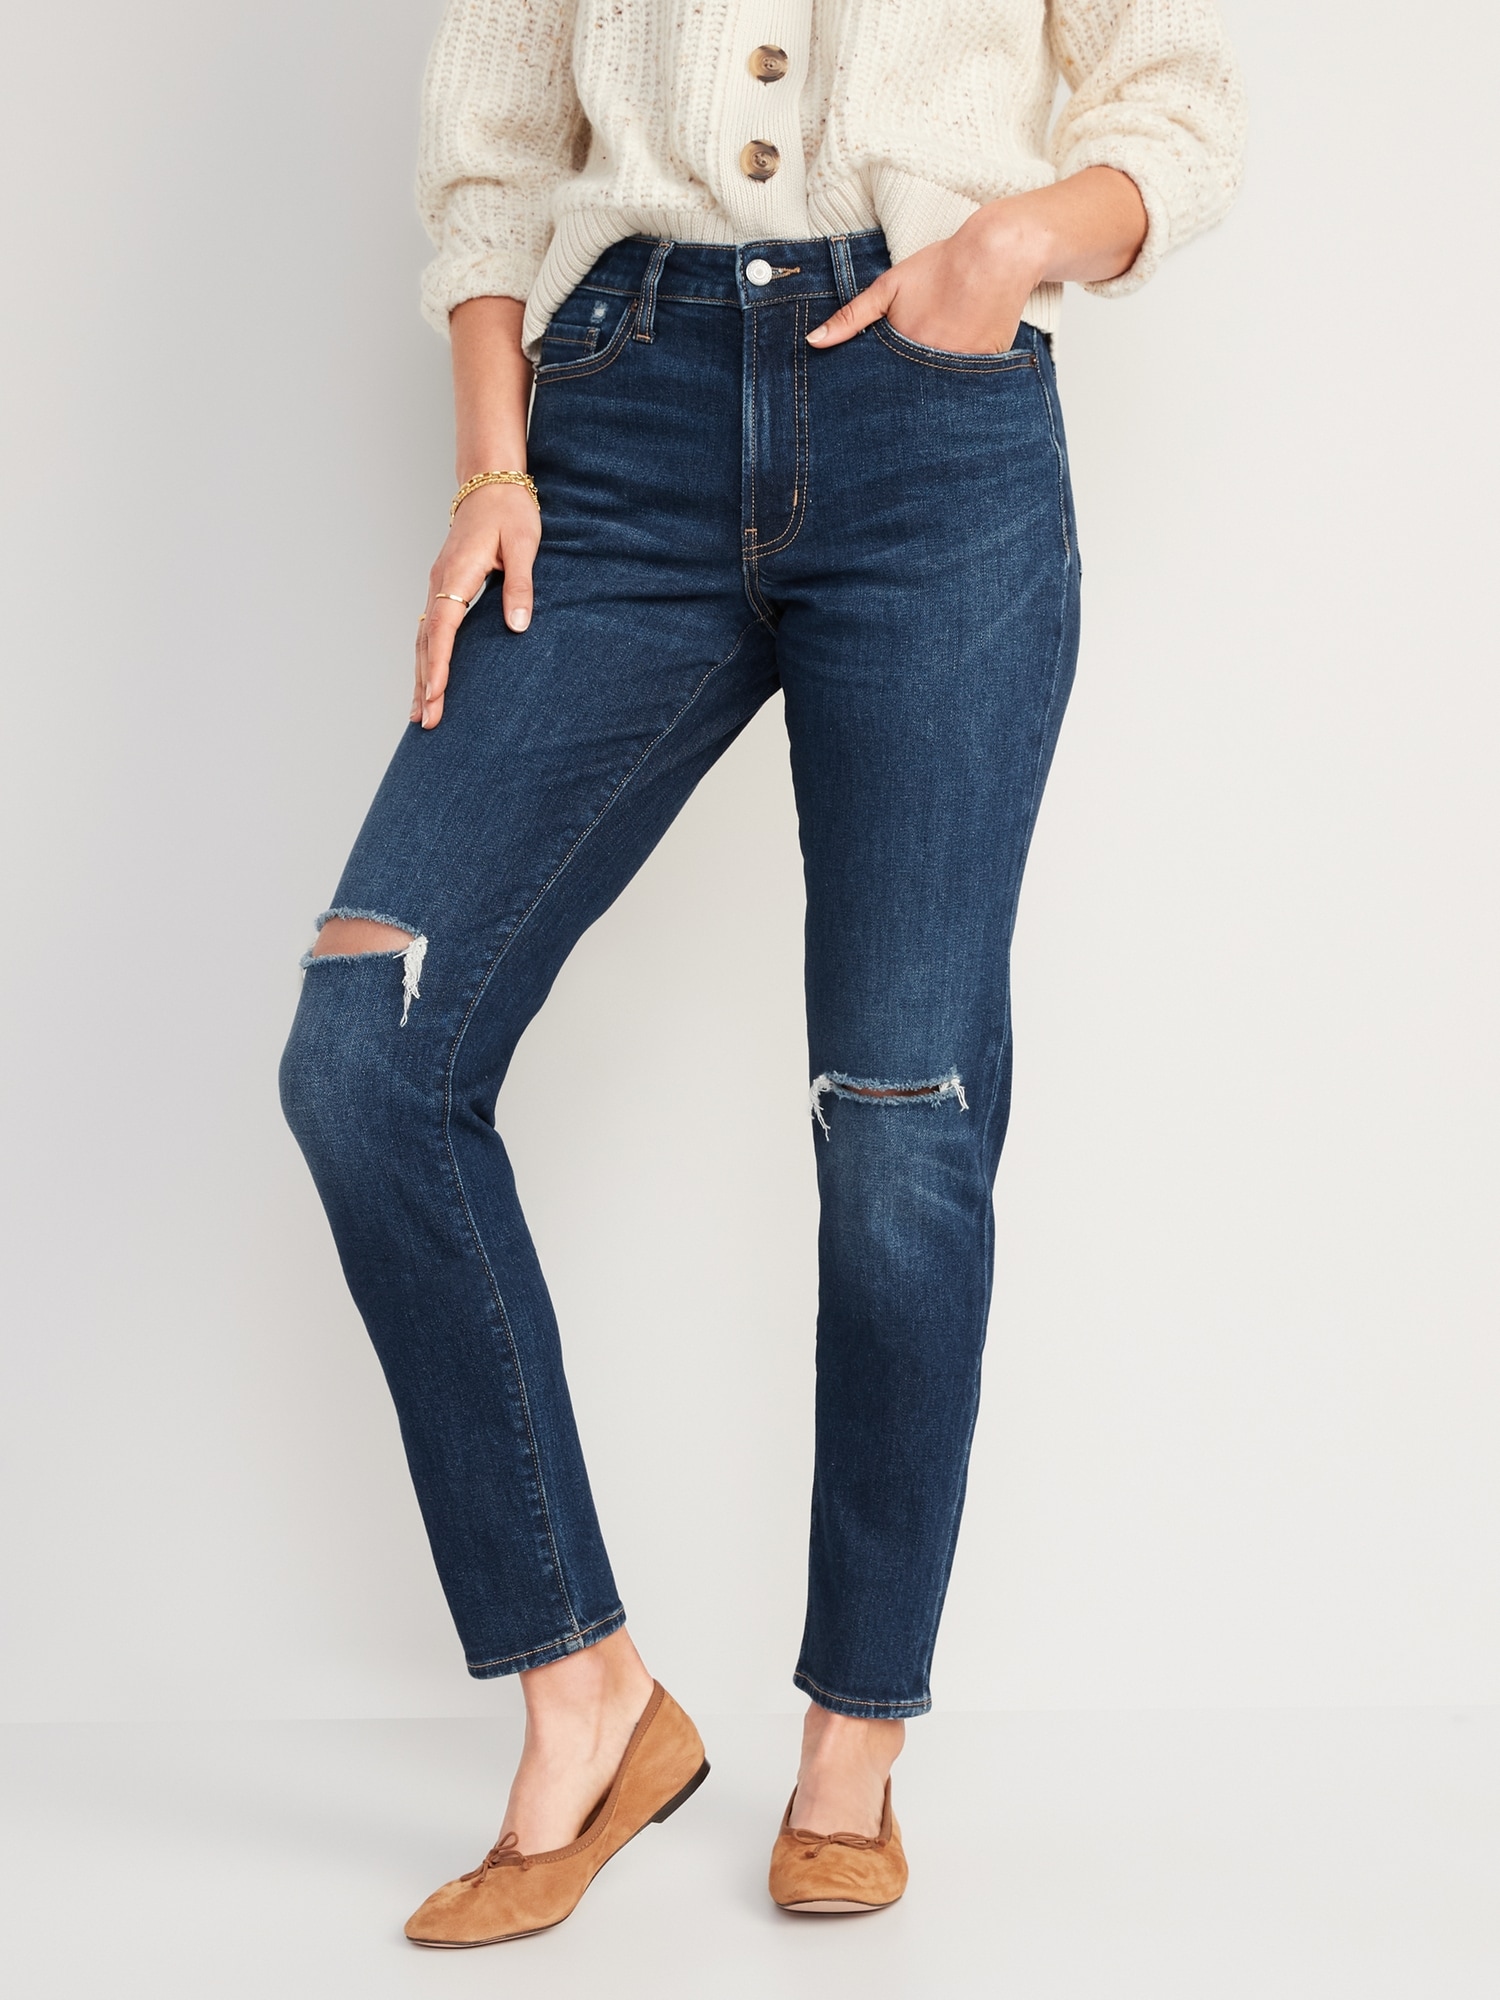 Women Jeans High Waist Ripped Jeans Vintage Streetwear Denim